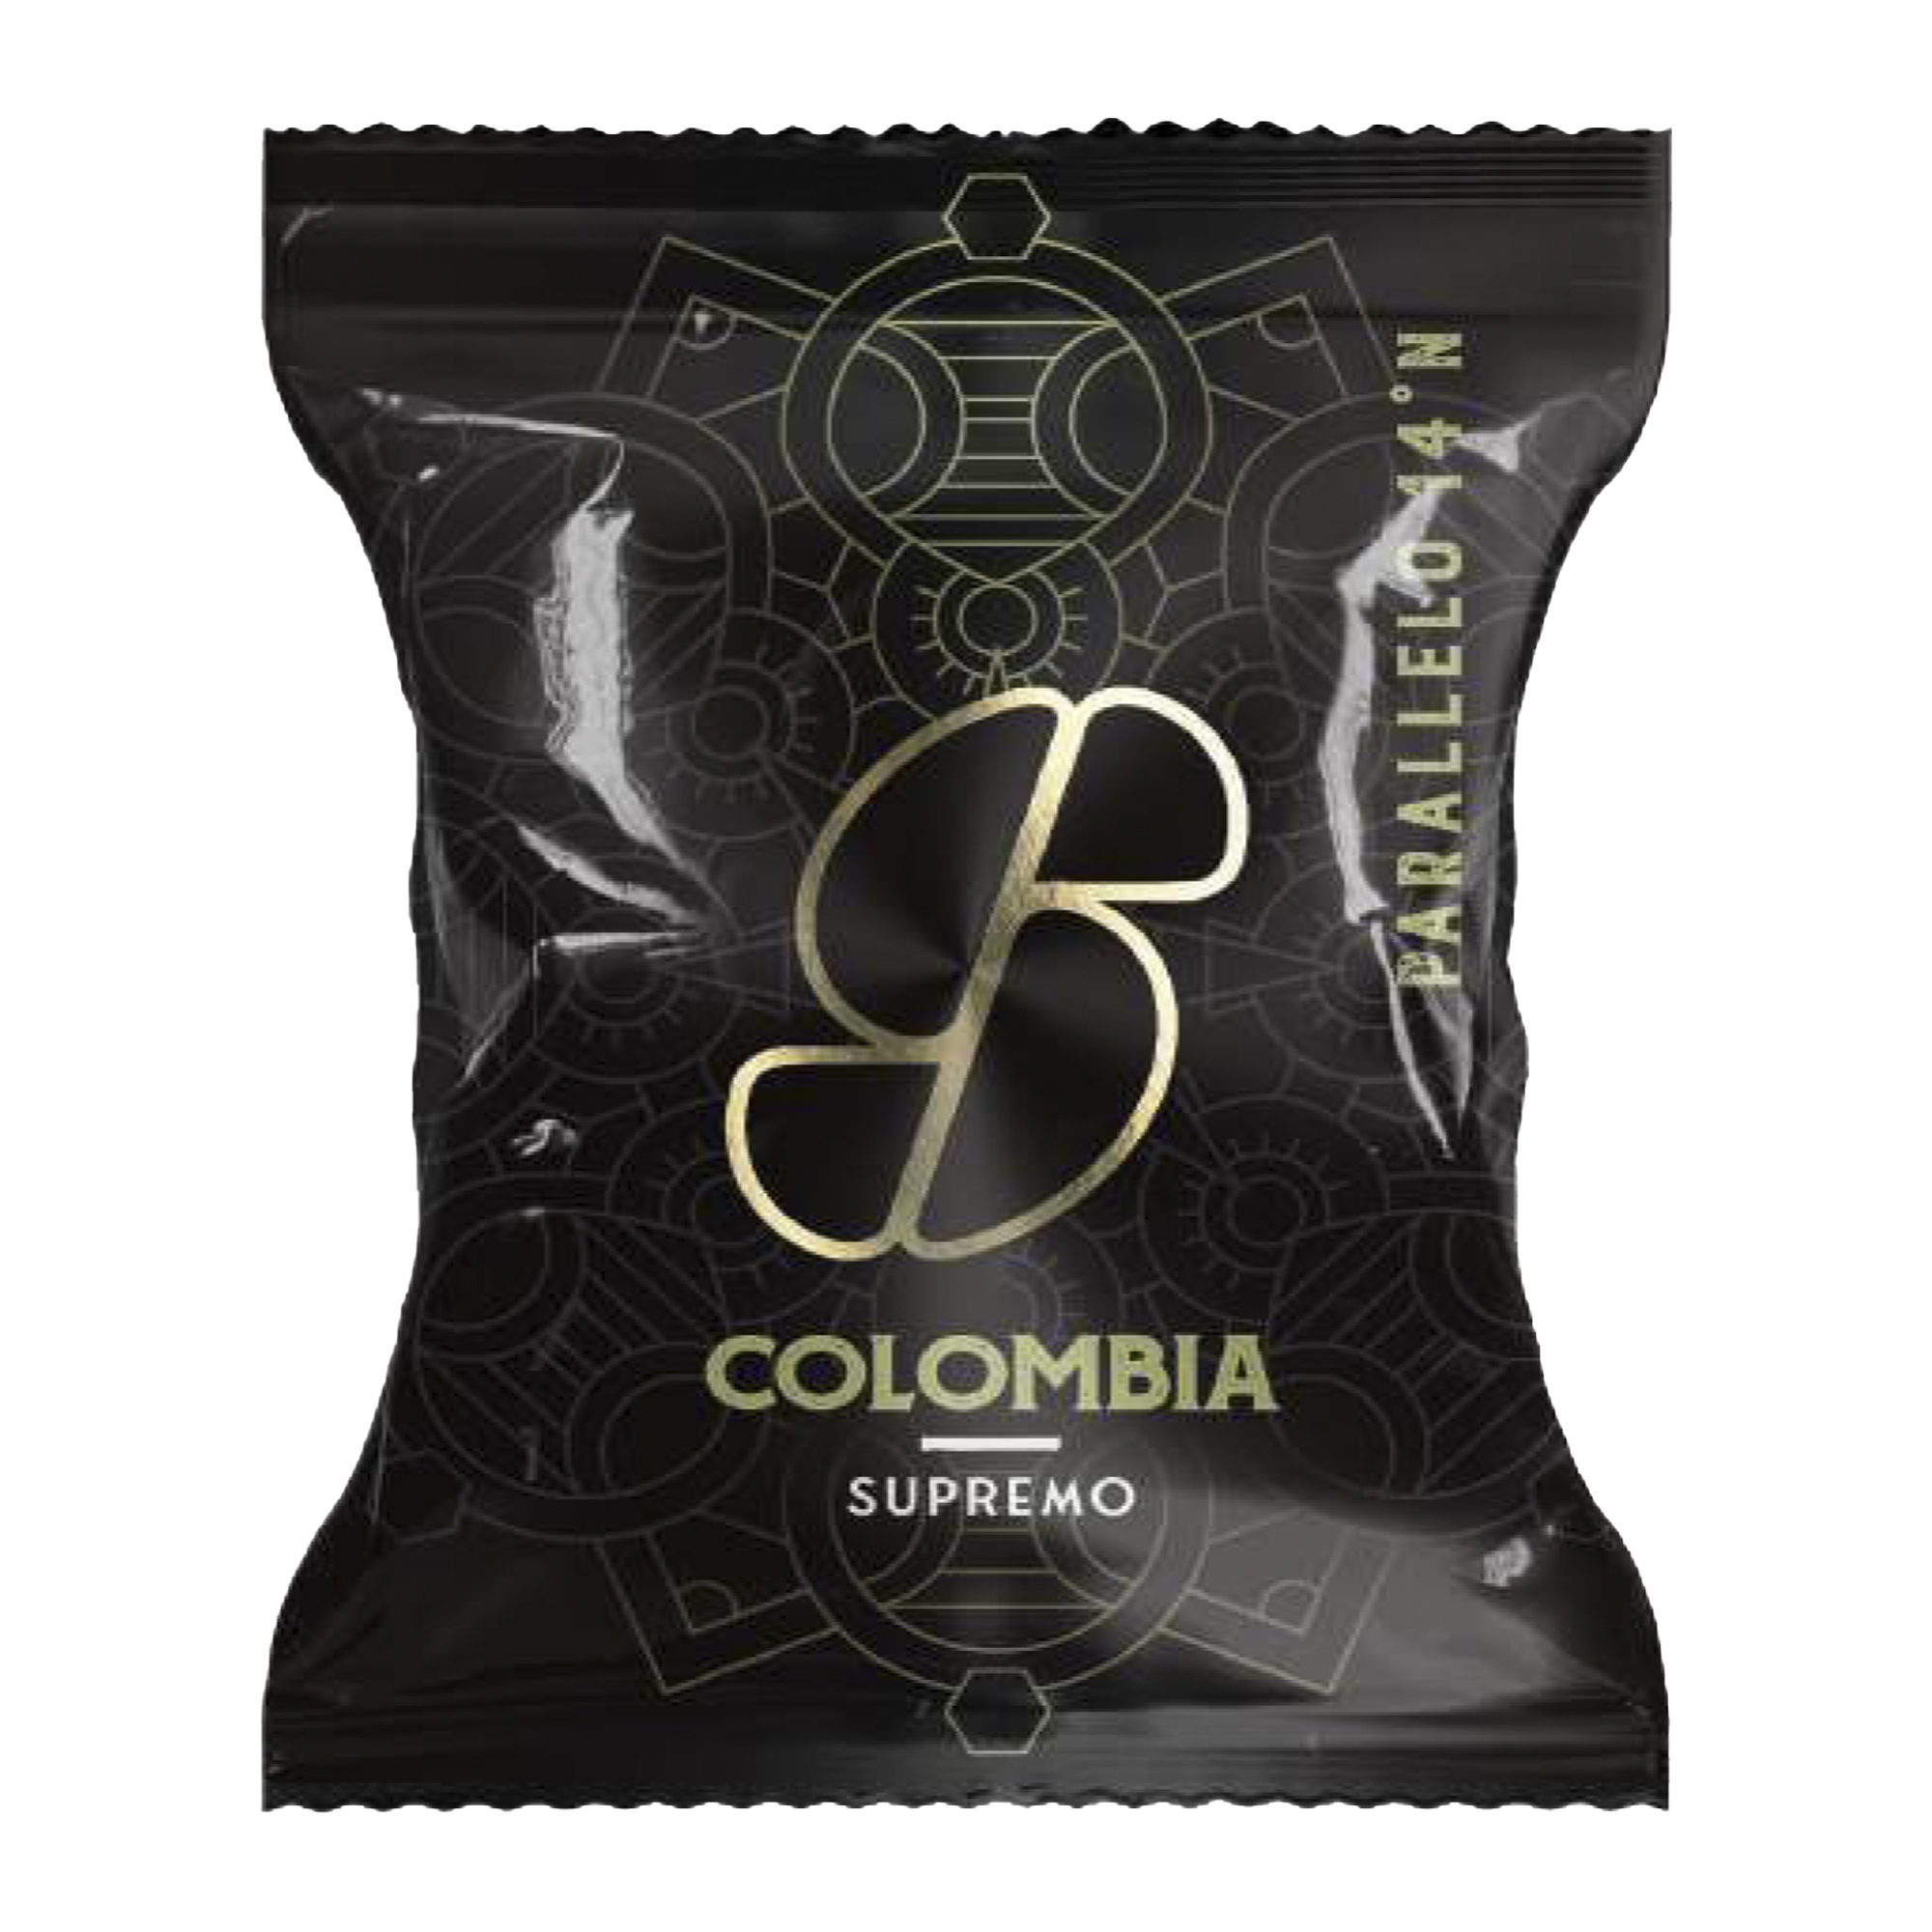 Capsula caffE' - Colombia supremo - Essse CaffE'